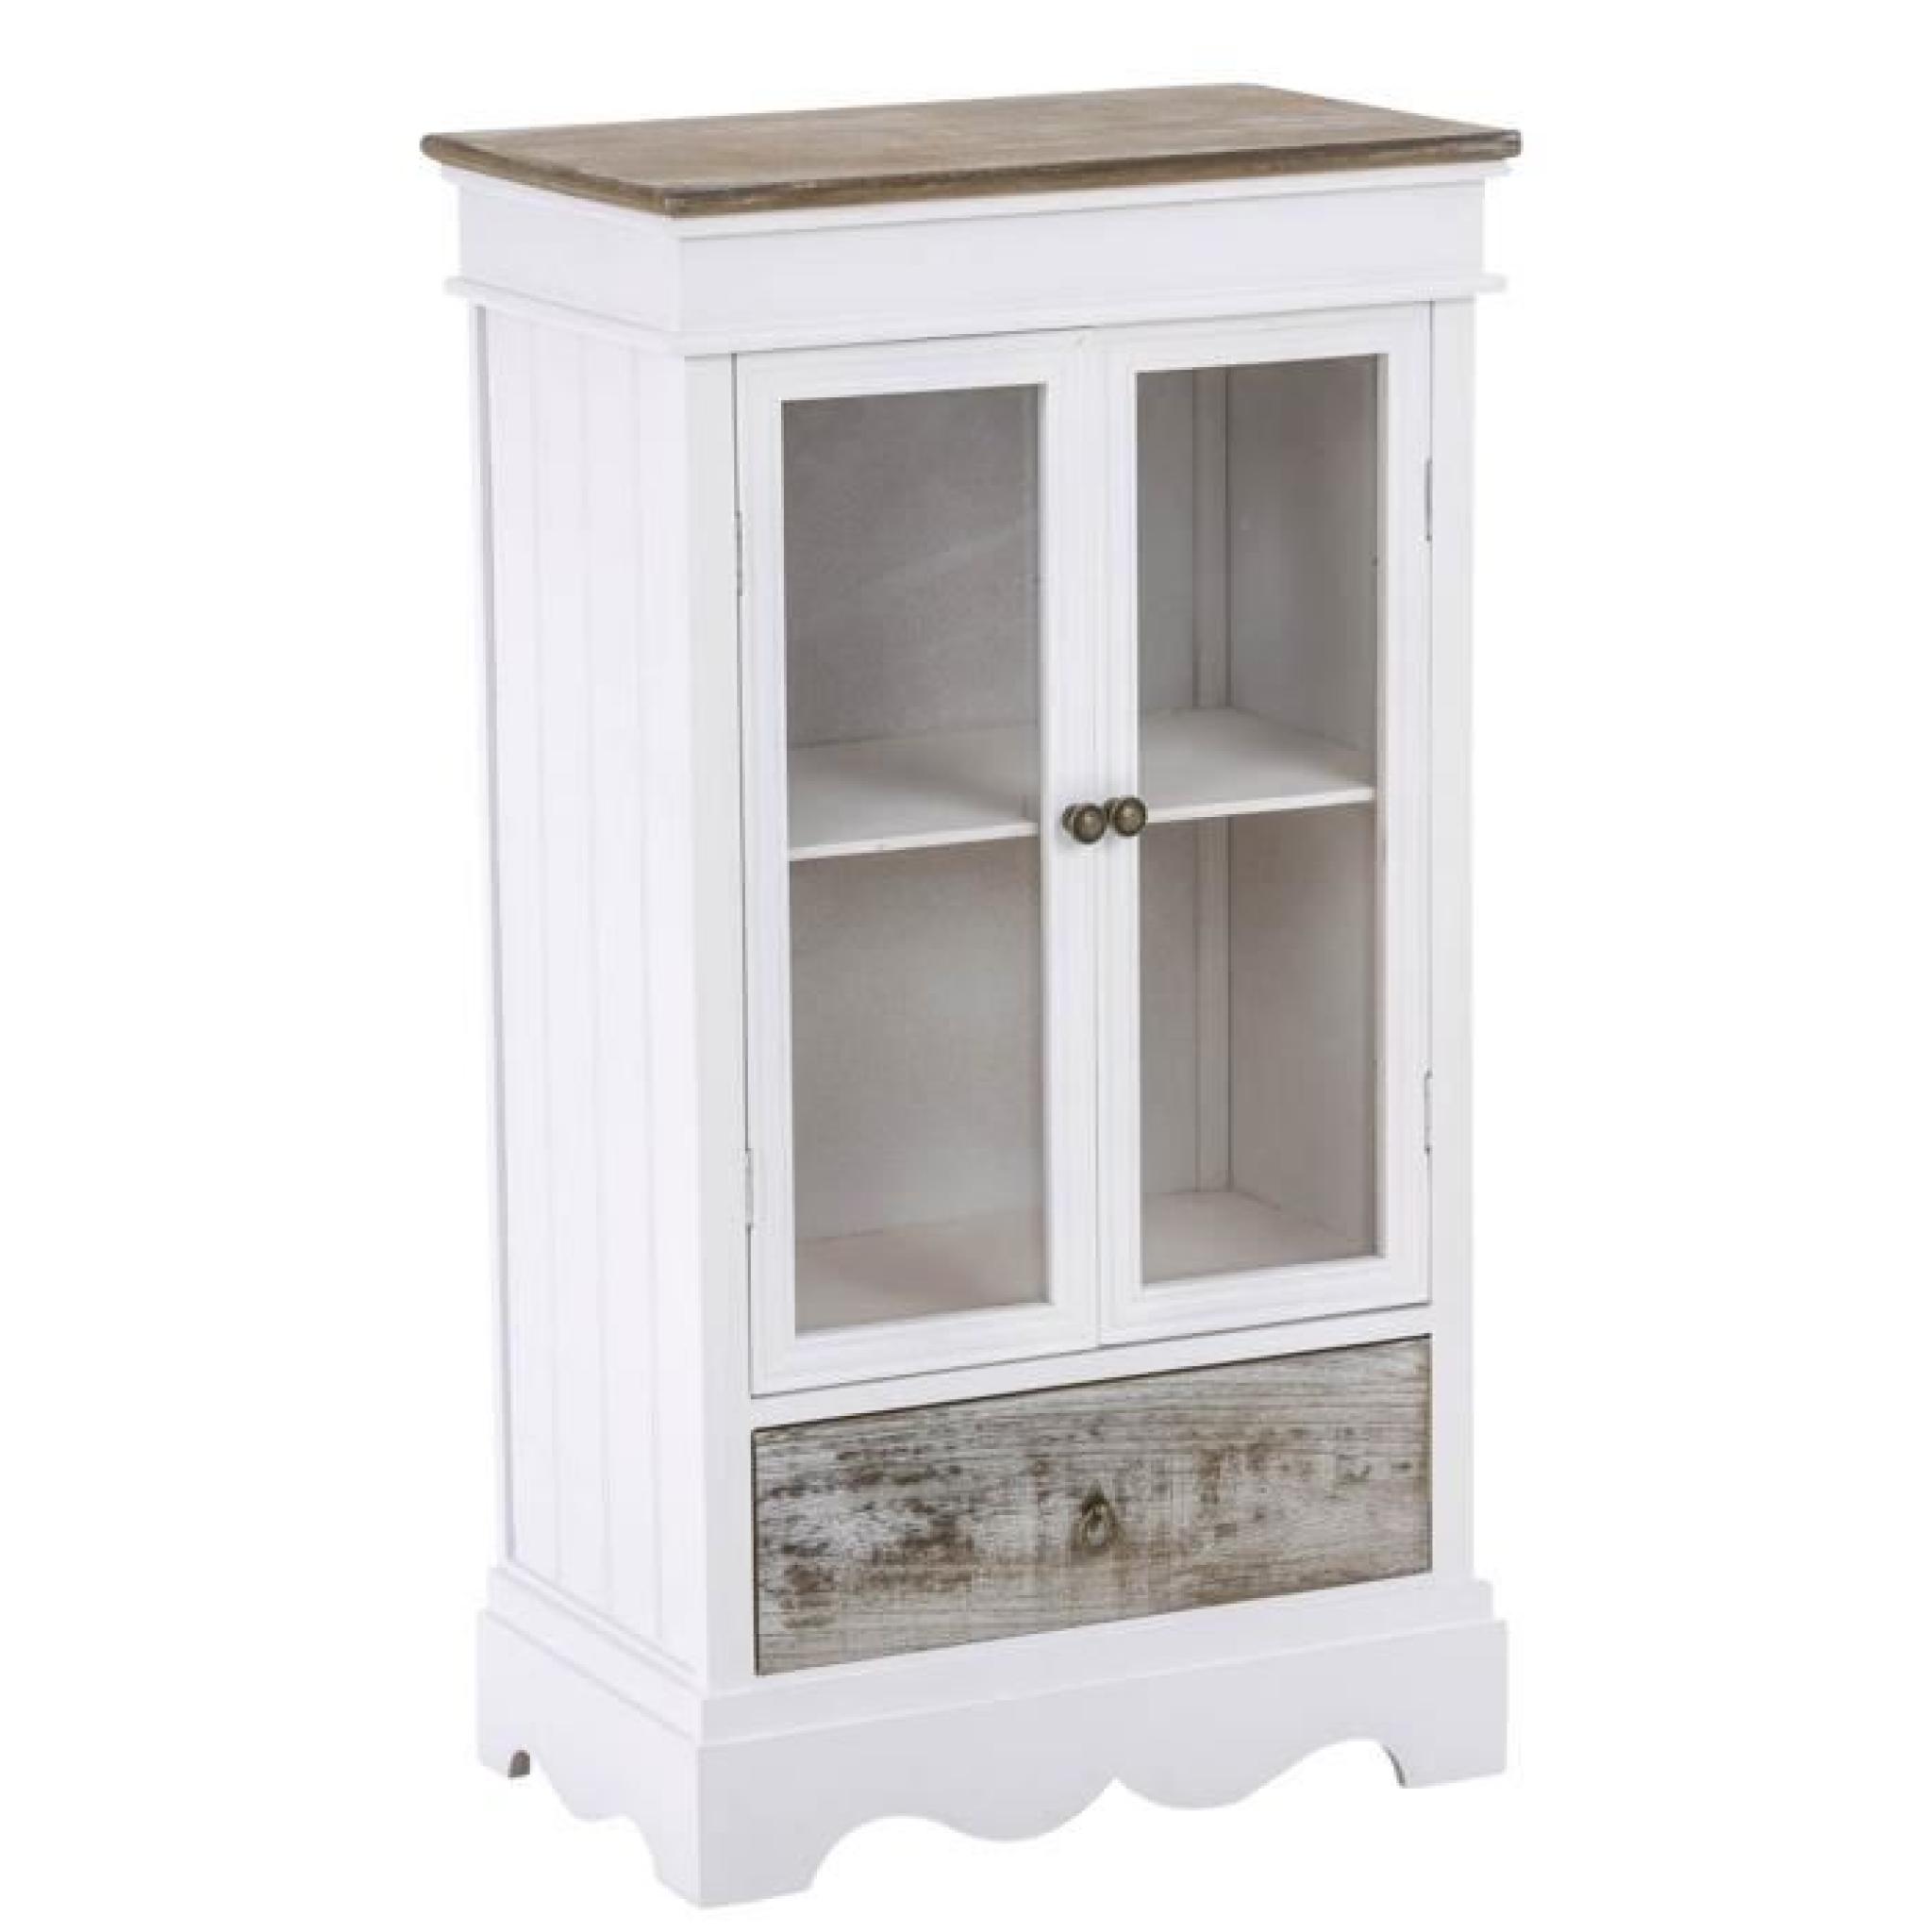 Commode en bois coloris blanc et brun  avec un tiroir et 2 portes en verre à 2 étagères - Dim : H 80 x L 45 x P 27 cm